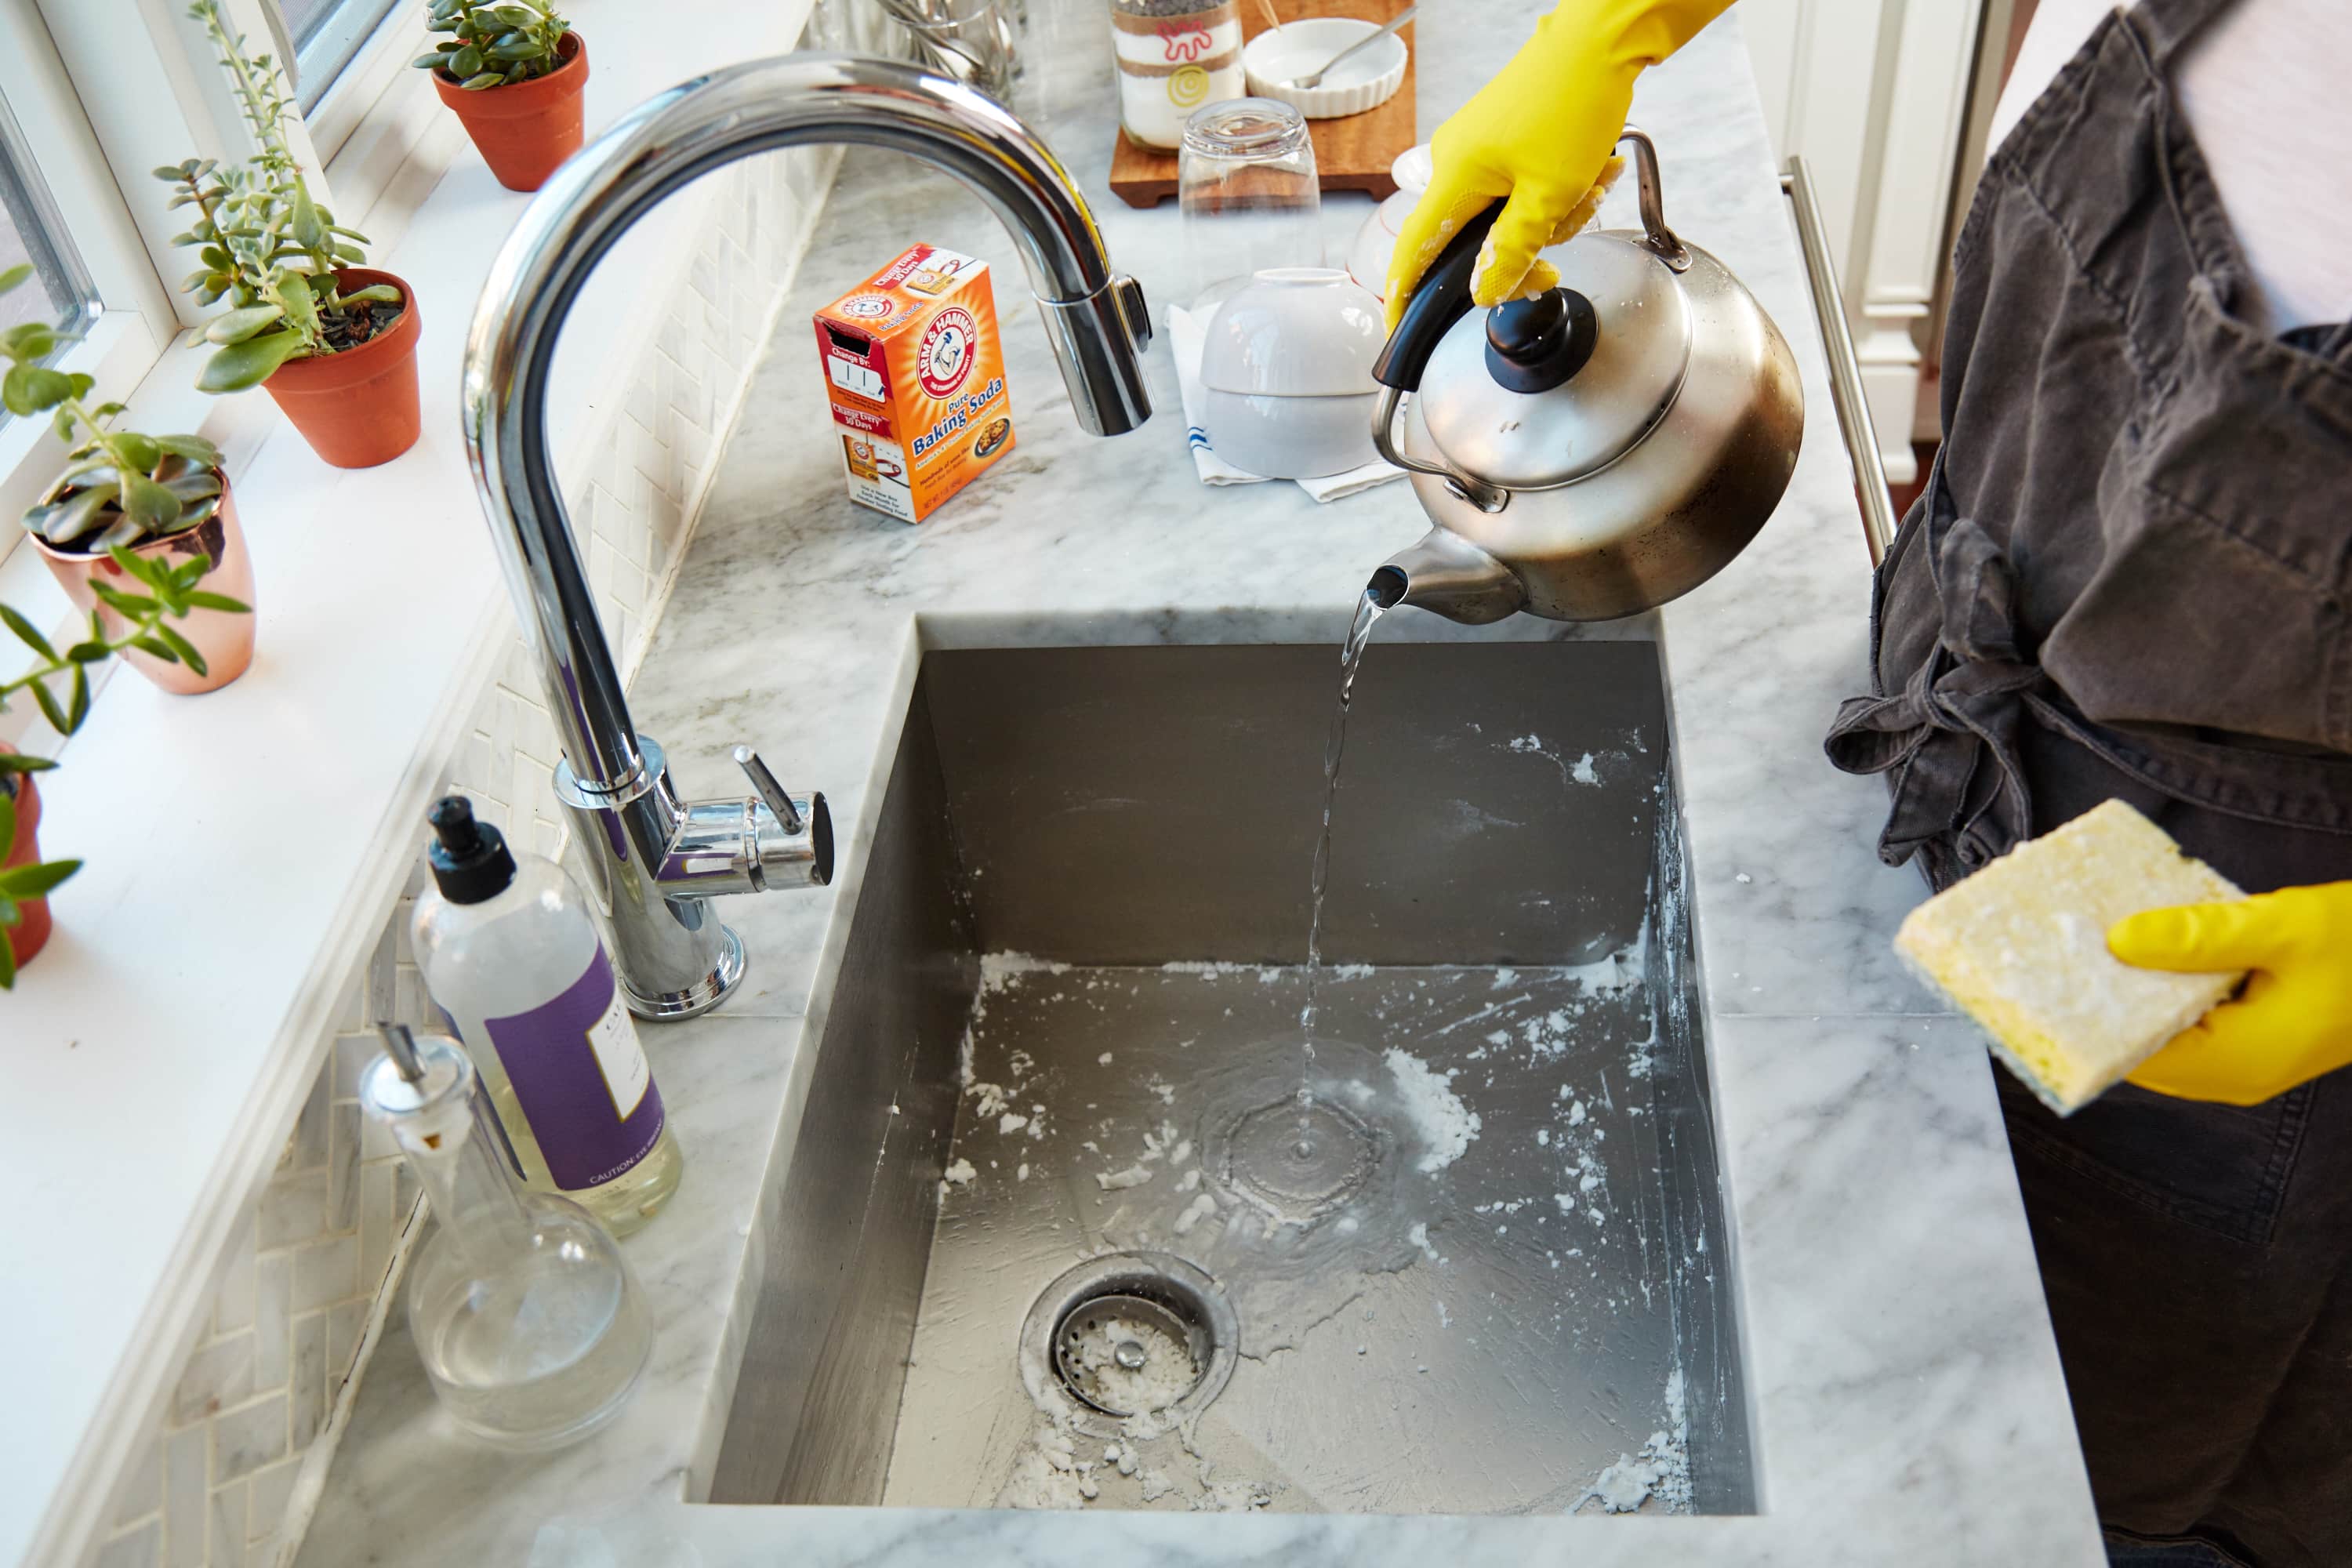 clean kitchen sink with lysol wipe